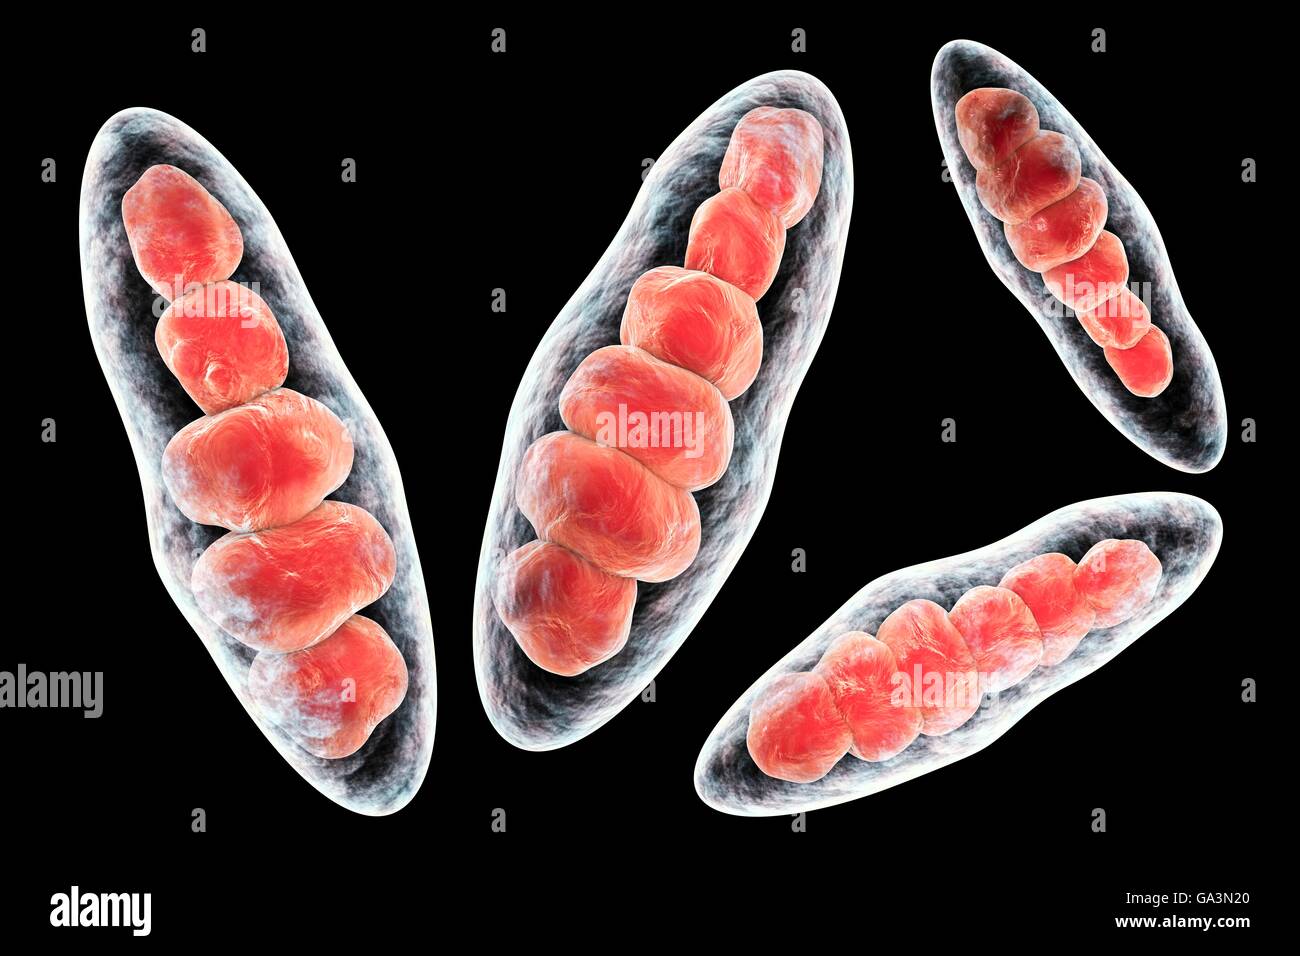 Computer-Illustration von Trichophyton Mentagrophytes, die Ursache von Fußpilz (Tinea Pedis) und Kopfhaut Scherpilzflechte (Tinea Capitus). Beide diese ansteckende von Infektionen der Haut werden durch die Pilzsporen (rot) verbreitet. T. Mentagrophytes ist eine von vielen Arten von Pilzen, die in der menschlichen Haut, Entzündung und Juckreiz wachsen können. Fußpilz und Scherpilzflechte werden mit Antimykotika behandelt. Hier sind die Macroconidia (mehrzellige Organe, die Sporen enthalten). Stockfoto